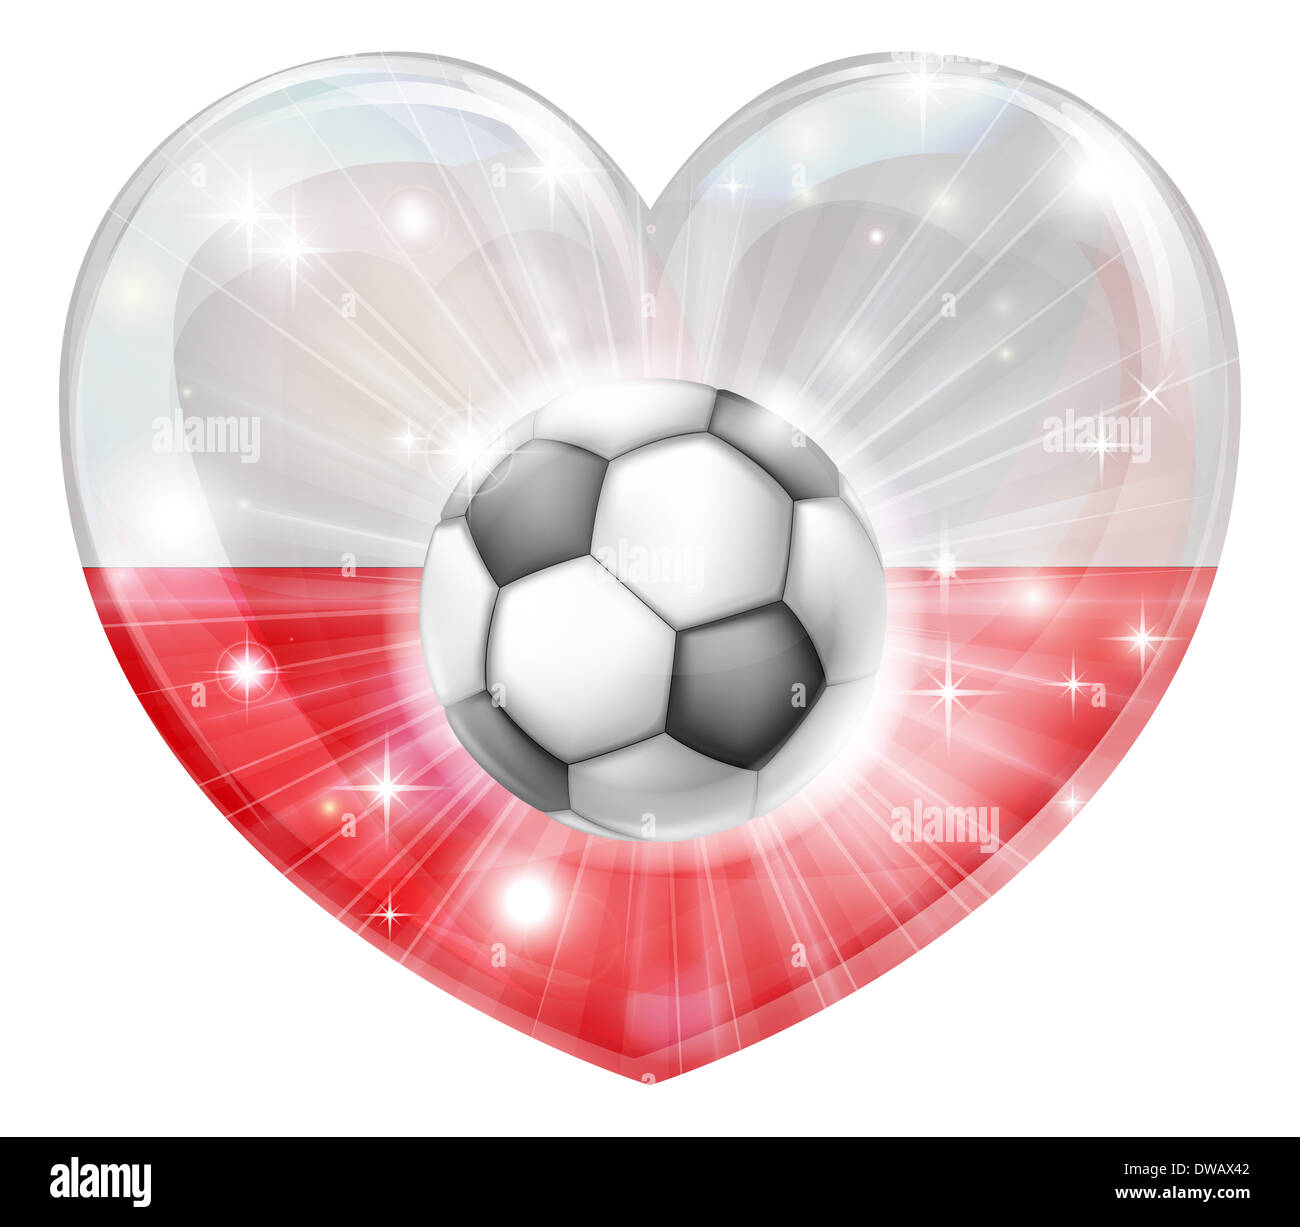 Pologne football soccer ball flag love heart concept avec le drapeau polonais en forme de coeur et un ballon de soccer de prendre l'avion Banque D'Images